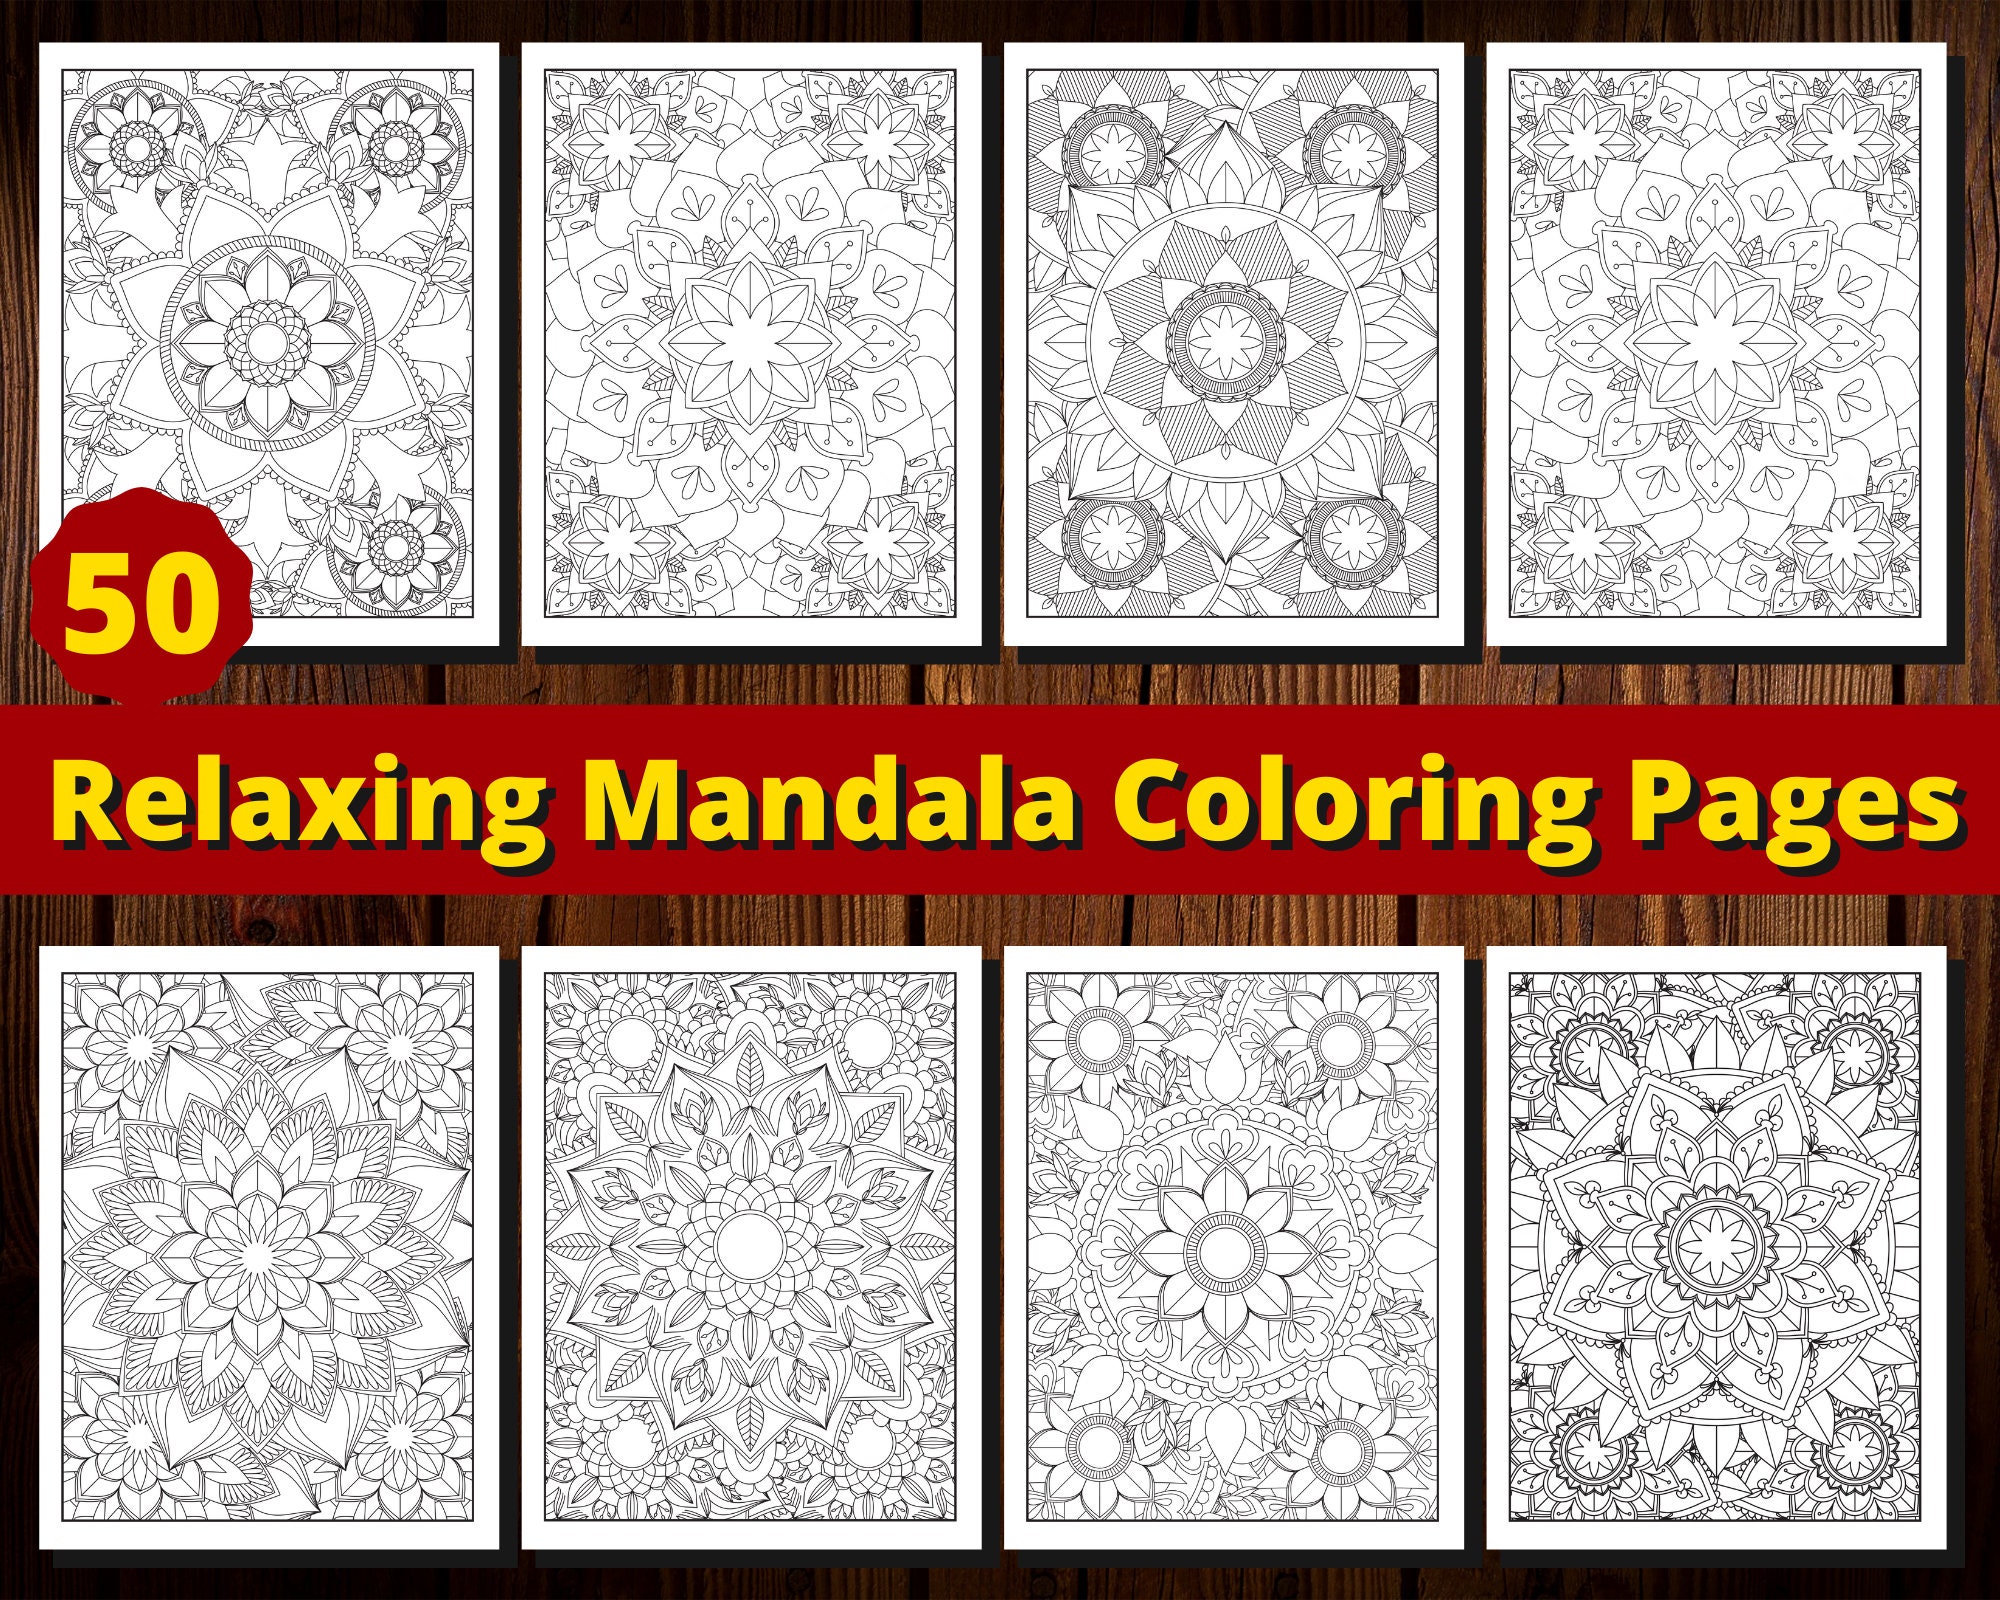 Coloring Mandalas Book - Colorya: 9782900628263 - AbeBooks